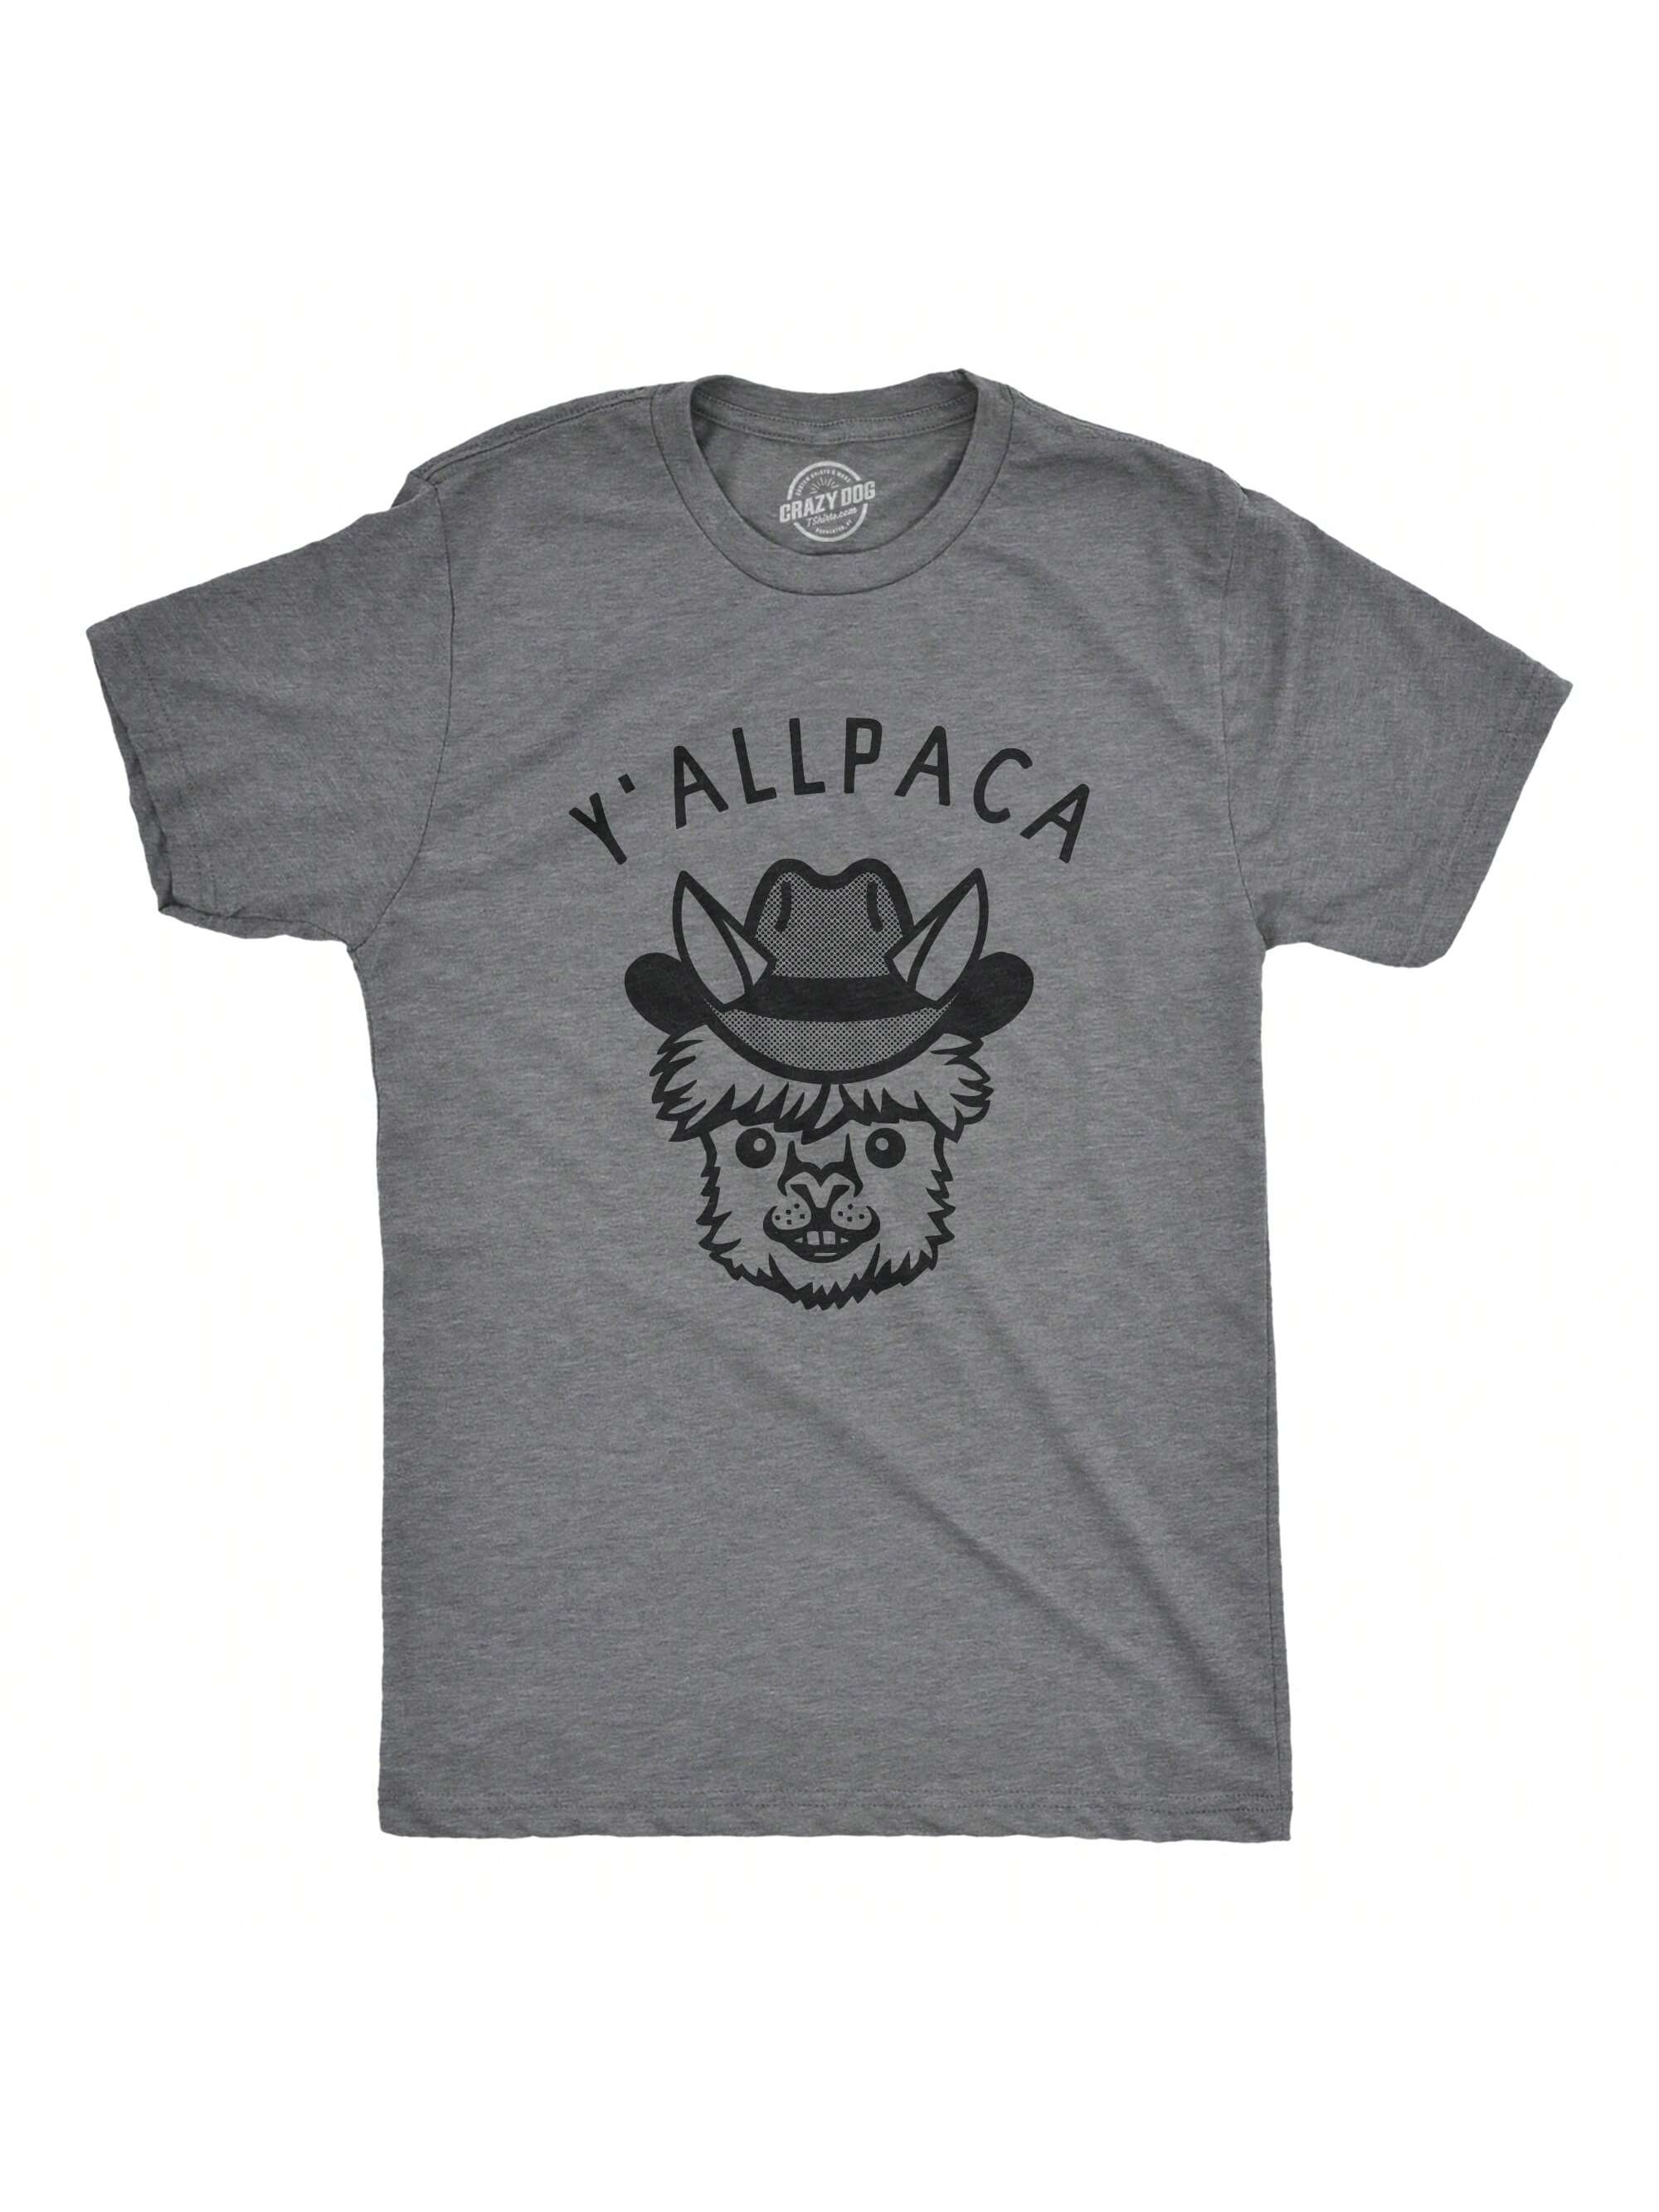 Мужская футболка «Nature Calls» с забавной саркастической надписью «Медведь какает», темно-серый вереск - yallpaca мужская футболка мафия медведь l синий